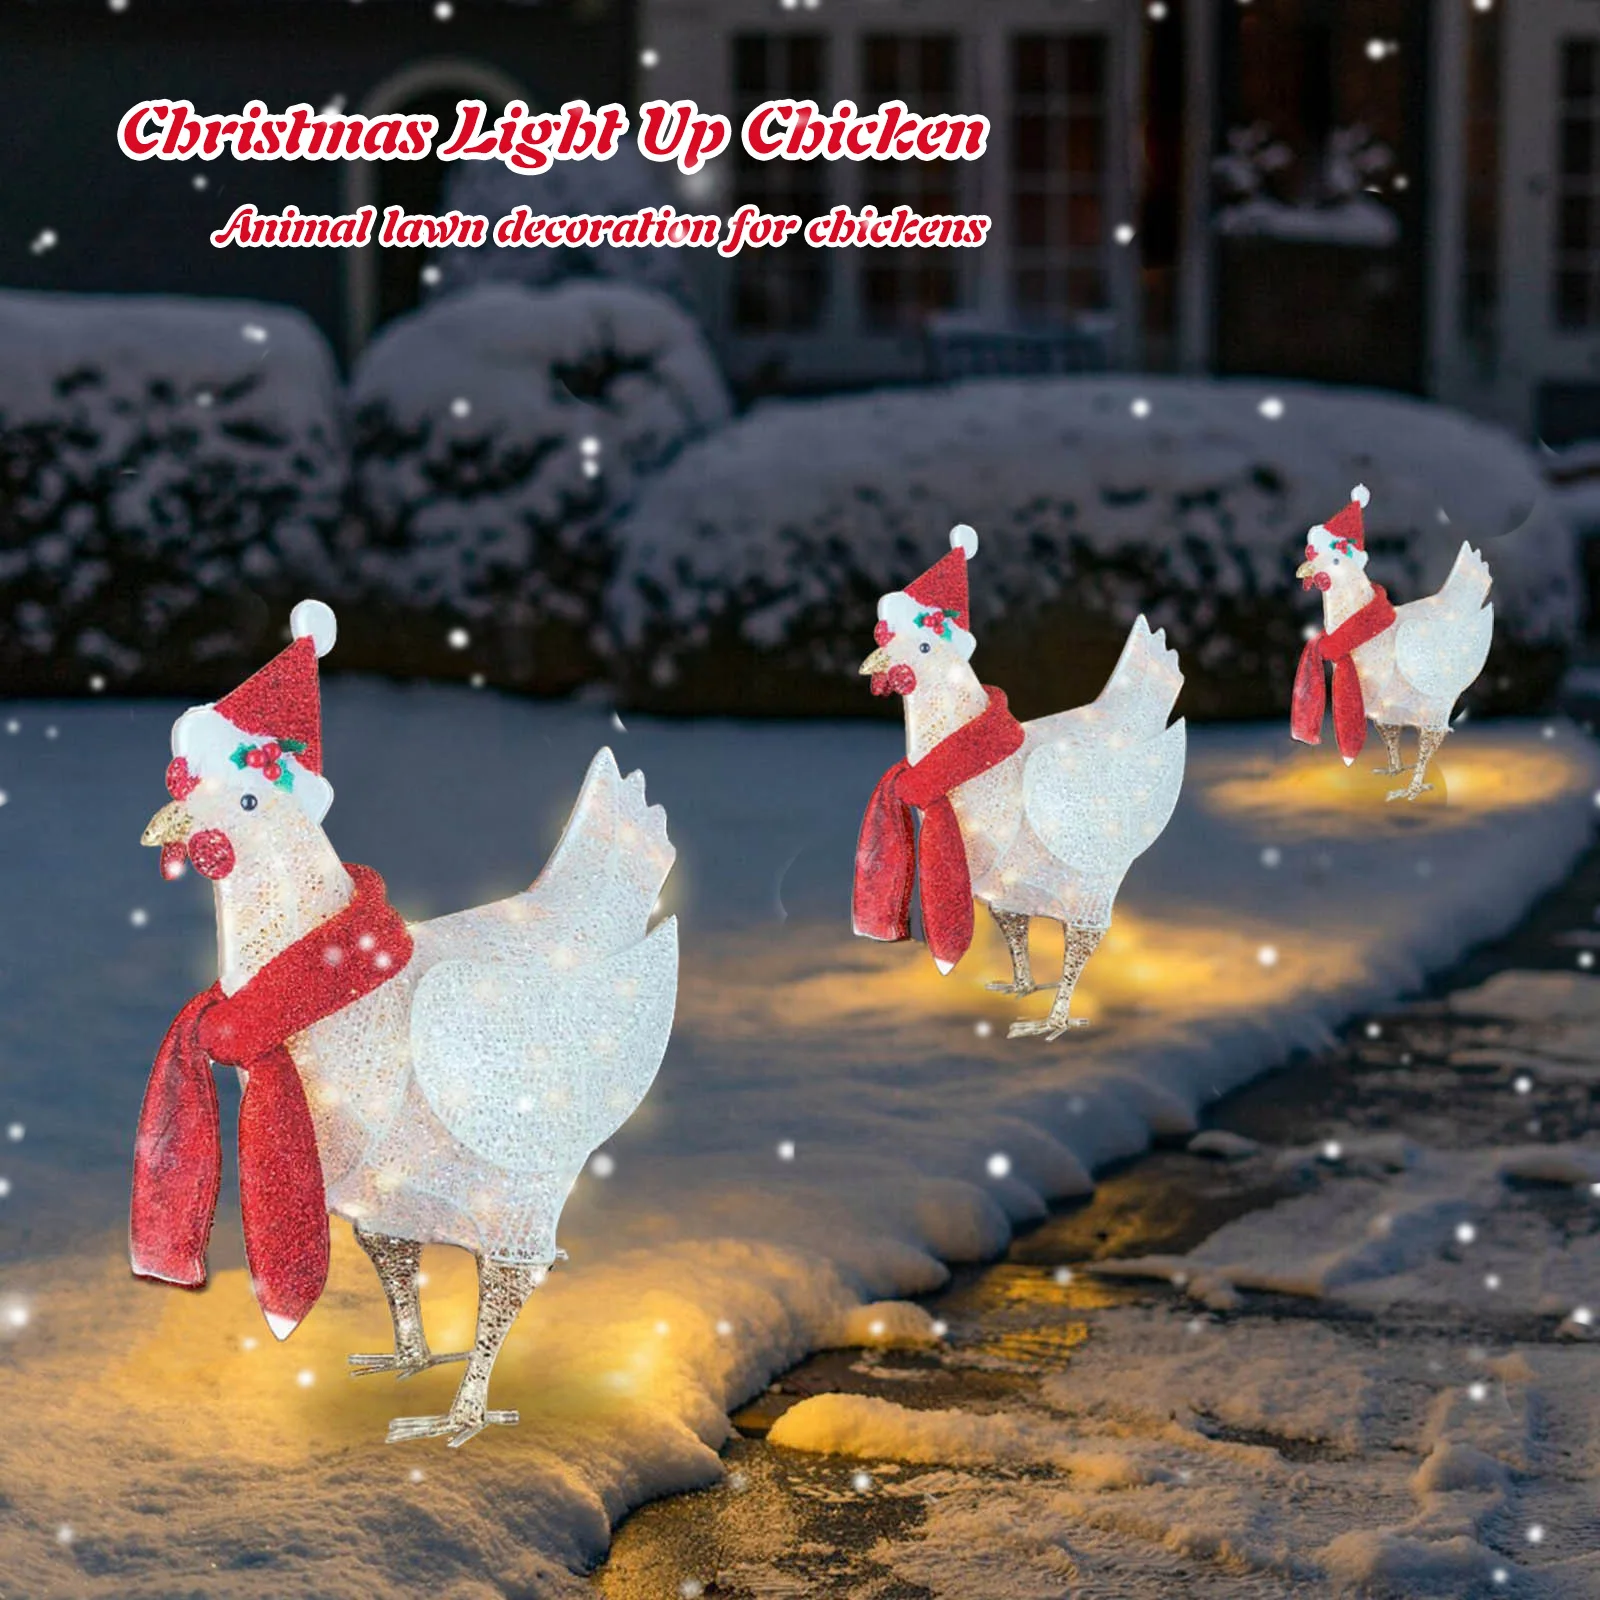 Ornamento da galinha do Natal - Ornamento acrílico do cair do galo